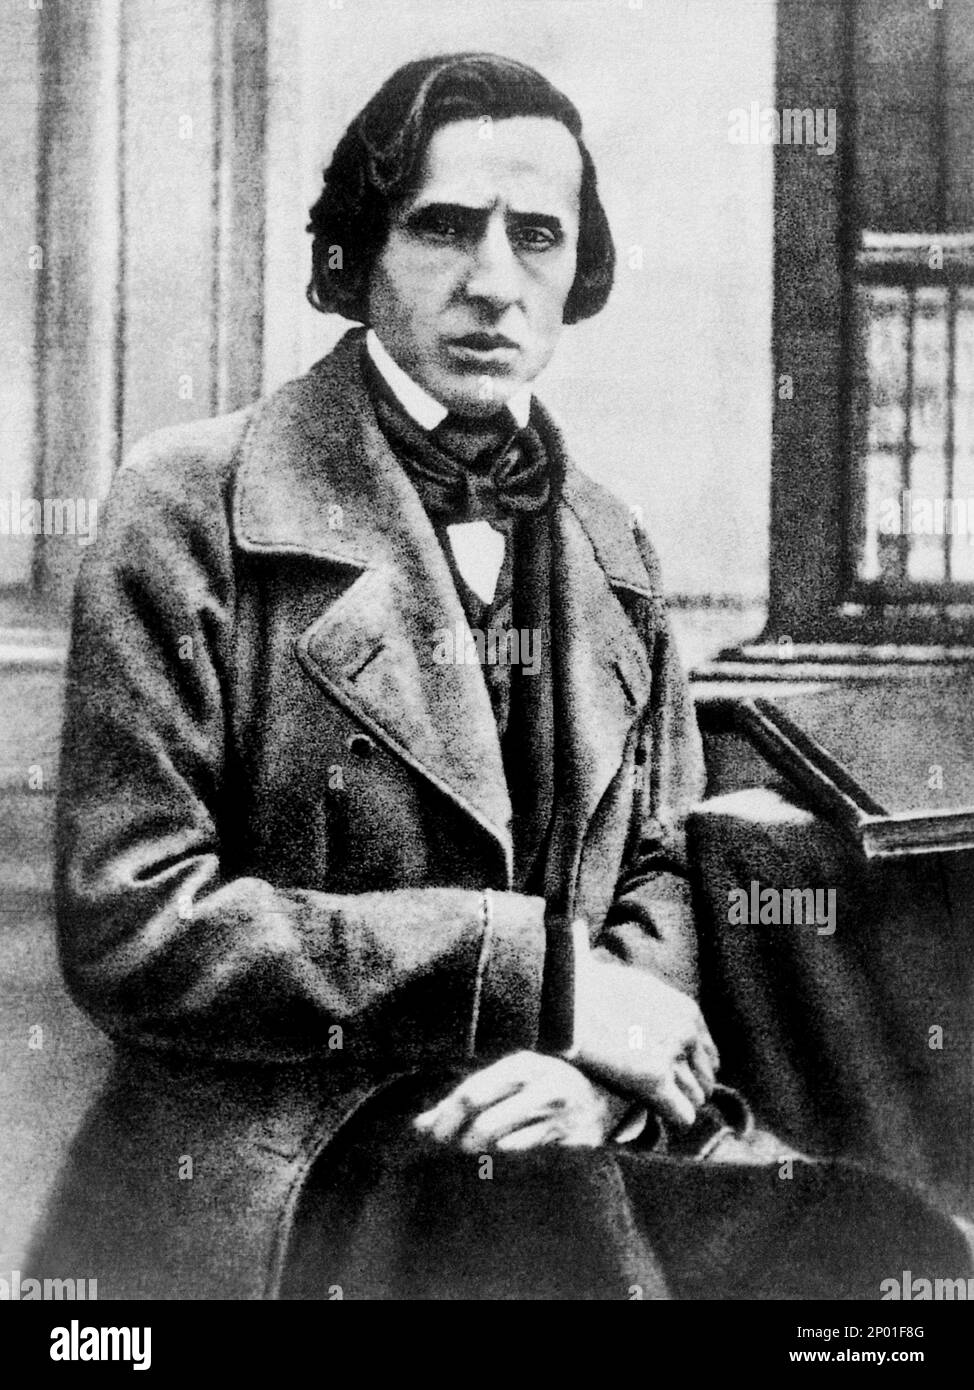 1849 , Parigi , Francia : il compositore e pianista di musica polacca Frédéric (Fryderyk) CHOPIN (1810-1849) . Foto dal daguerreotipo di L. A. Bisson , Parigi - MUSICA CLASSICA - COMPOSITORE - PIANISTA - ritratto - ritratto - cravatta - papillon - cravatta - classica ----- Archivio GBB Foto Stock